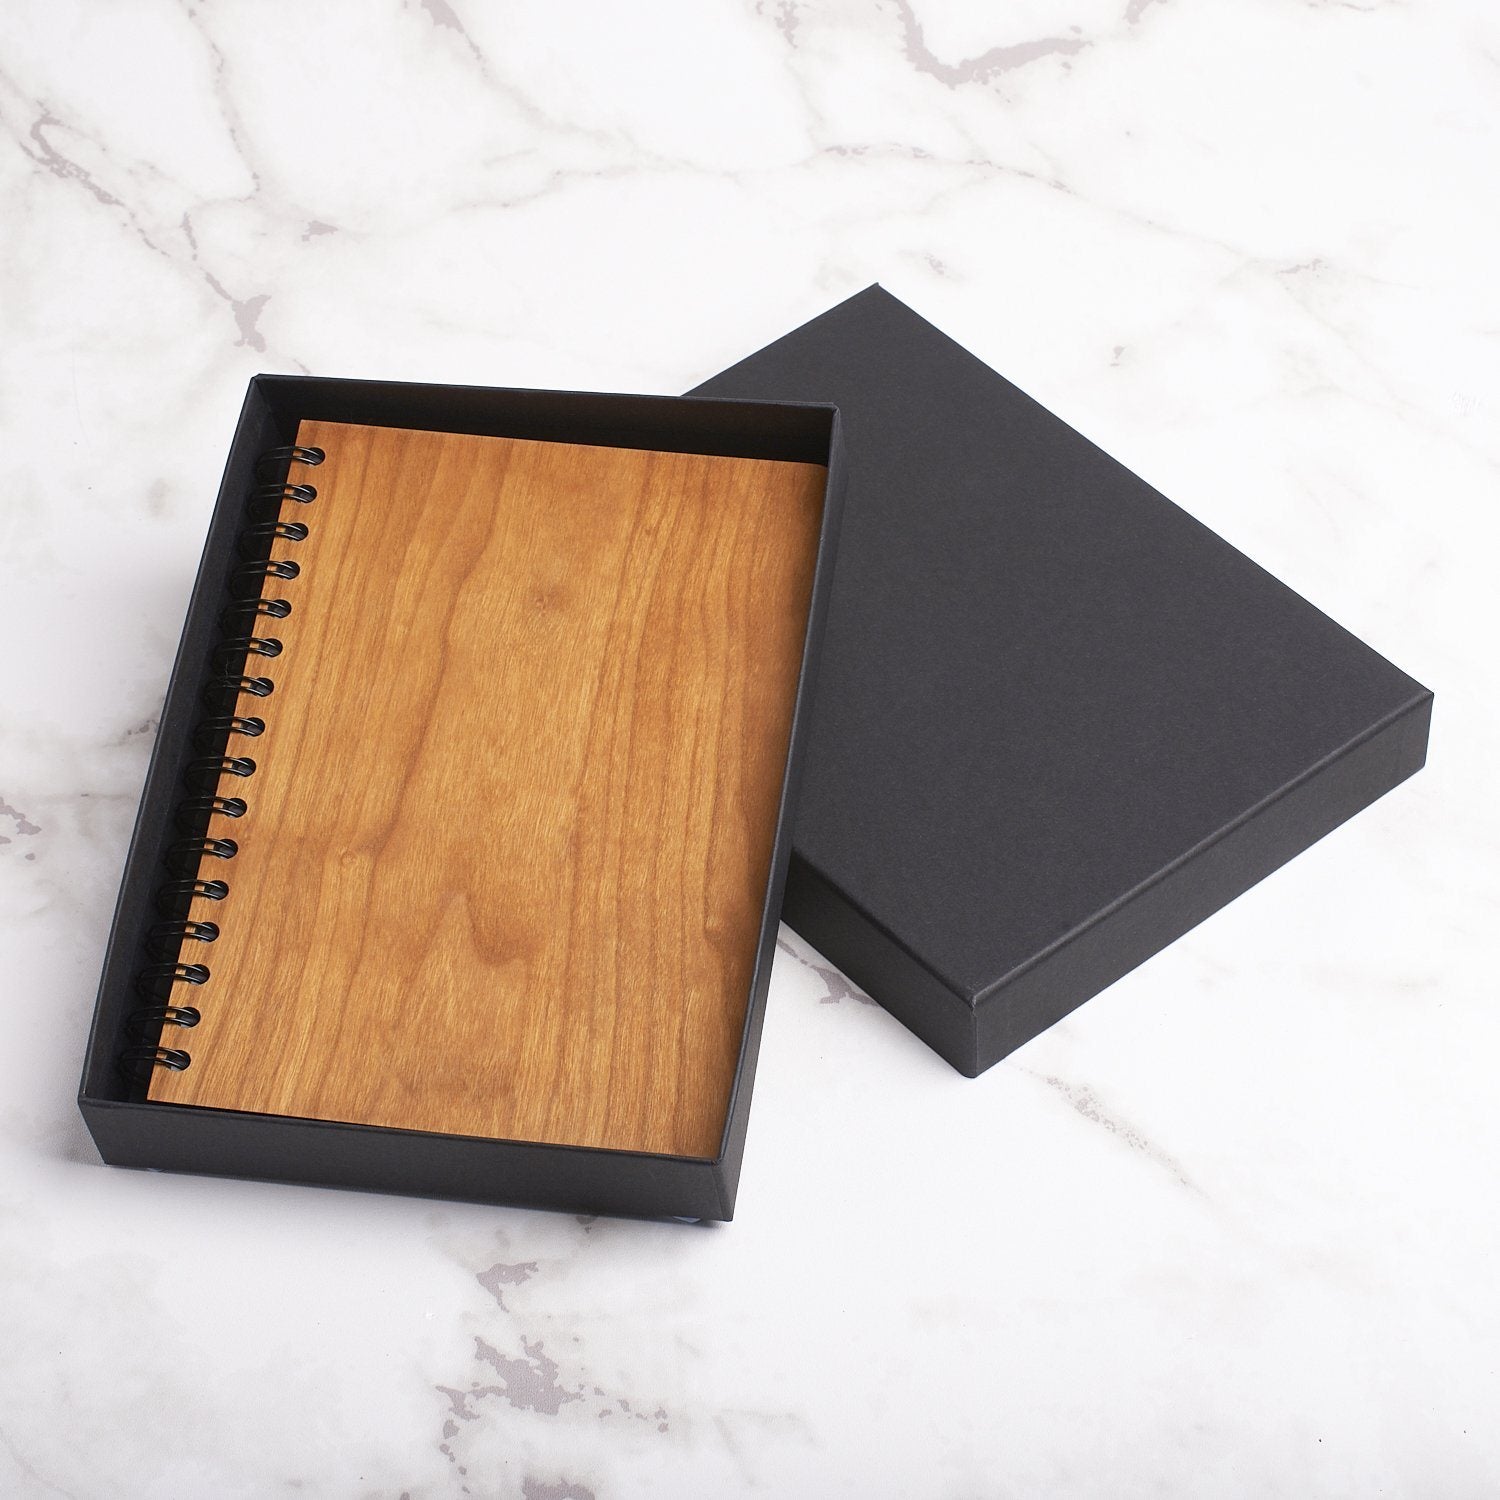 Notebook Planner - Personalised A5 Baby Memories Note Book Diary, Keepsake Milestone Journal -Duck Block